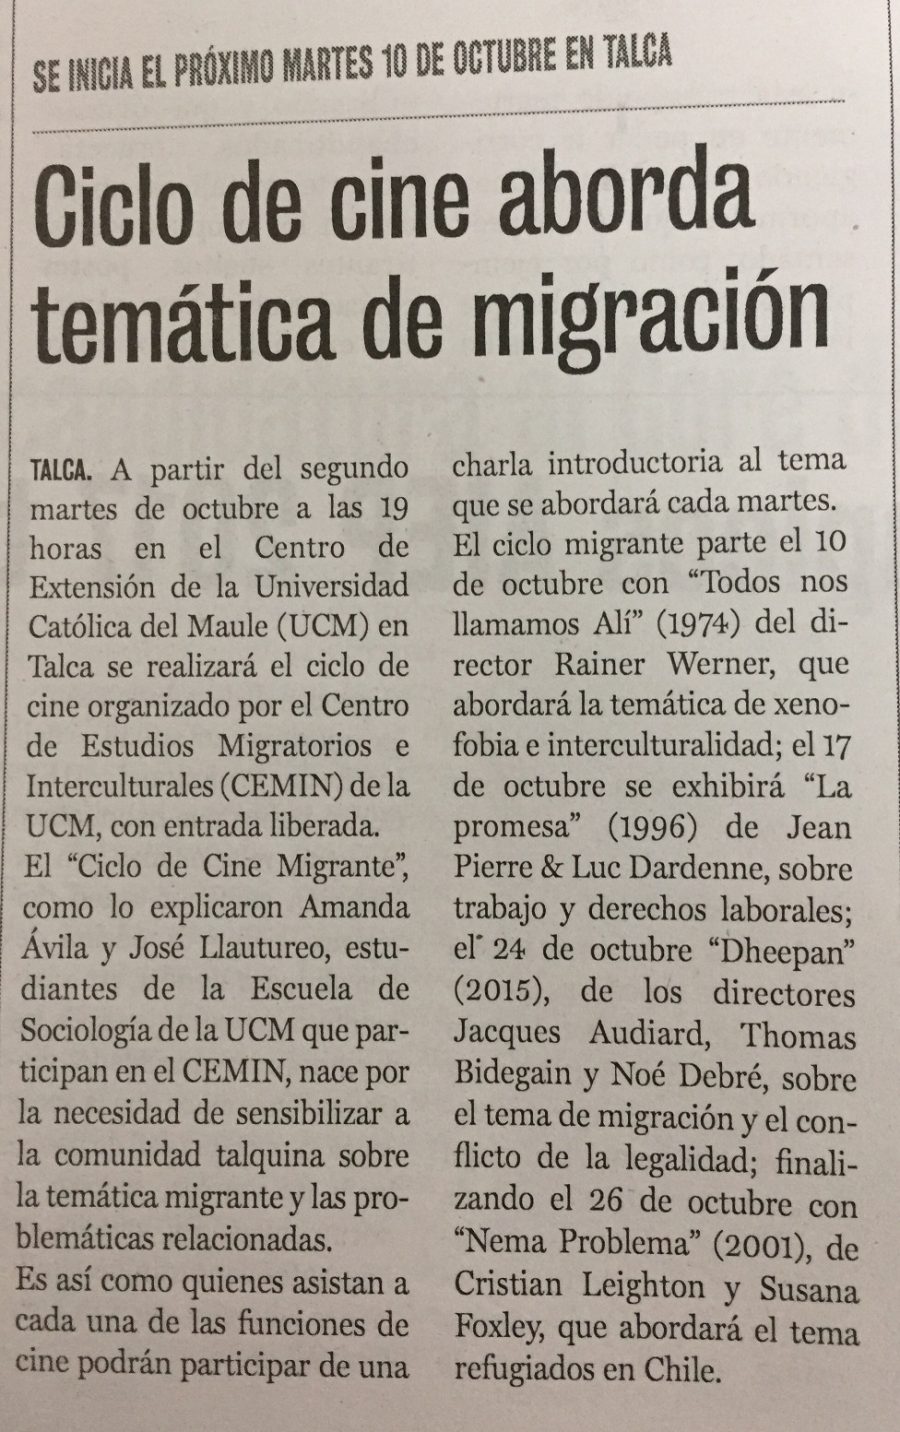 02 de octubre en Diario La Prensa: “Ciclo de cine aborda temática de migración”